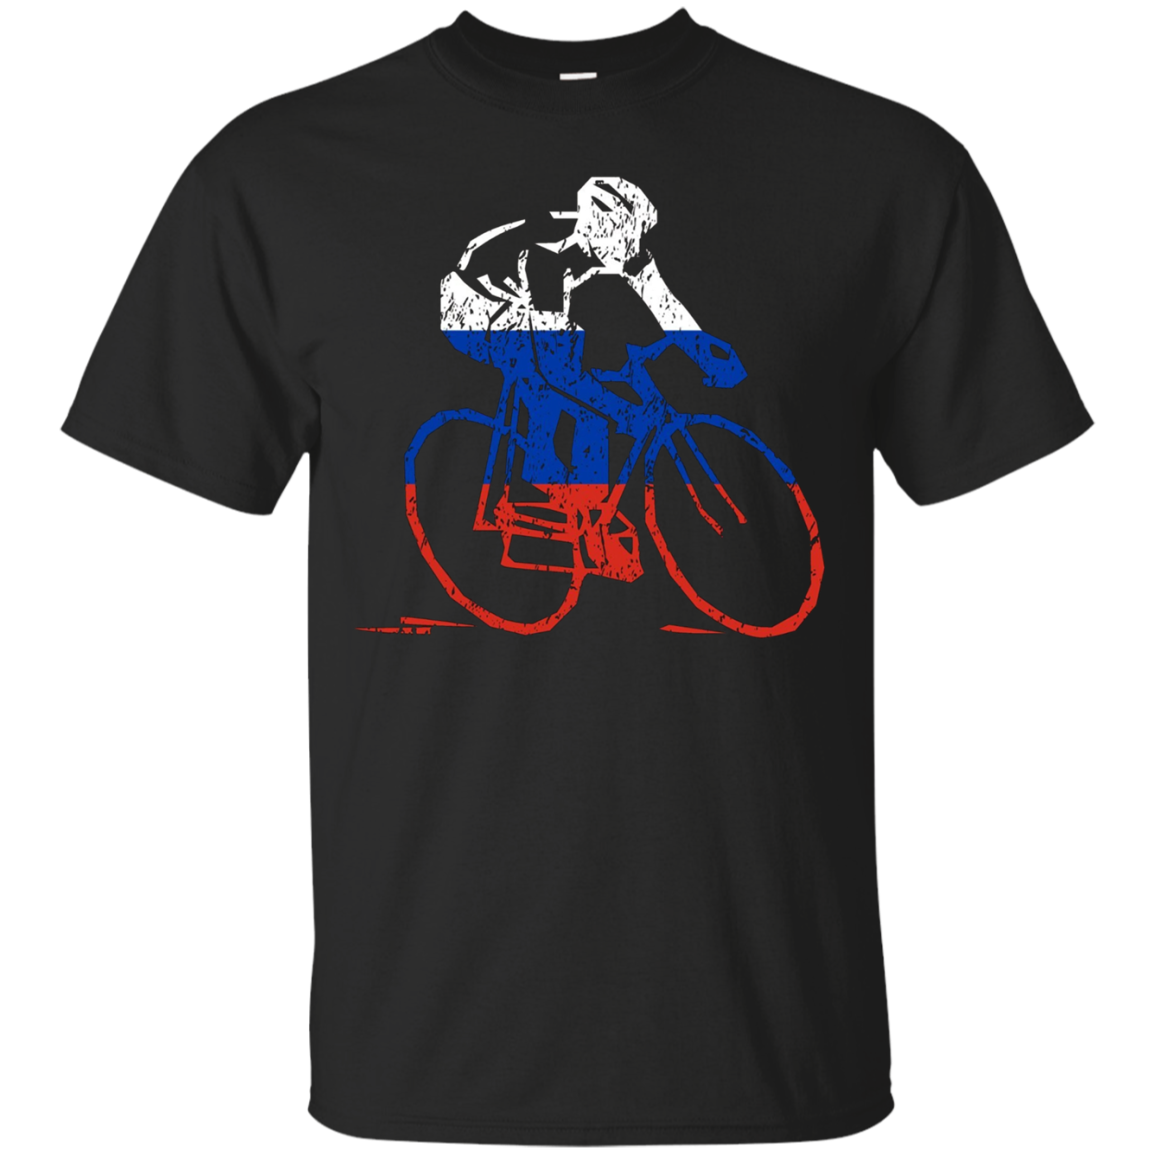 Russian Cyclist Road Racing Tour Cycling Race Gift T-shirt